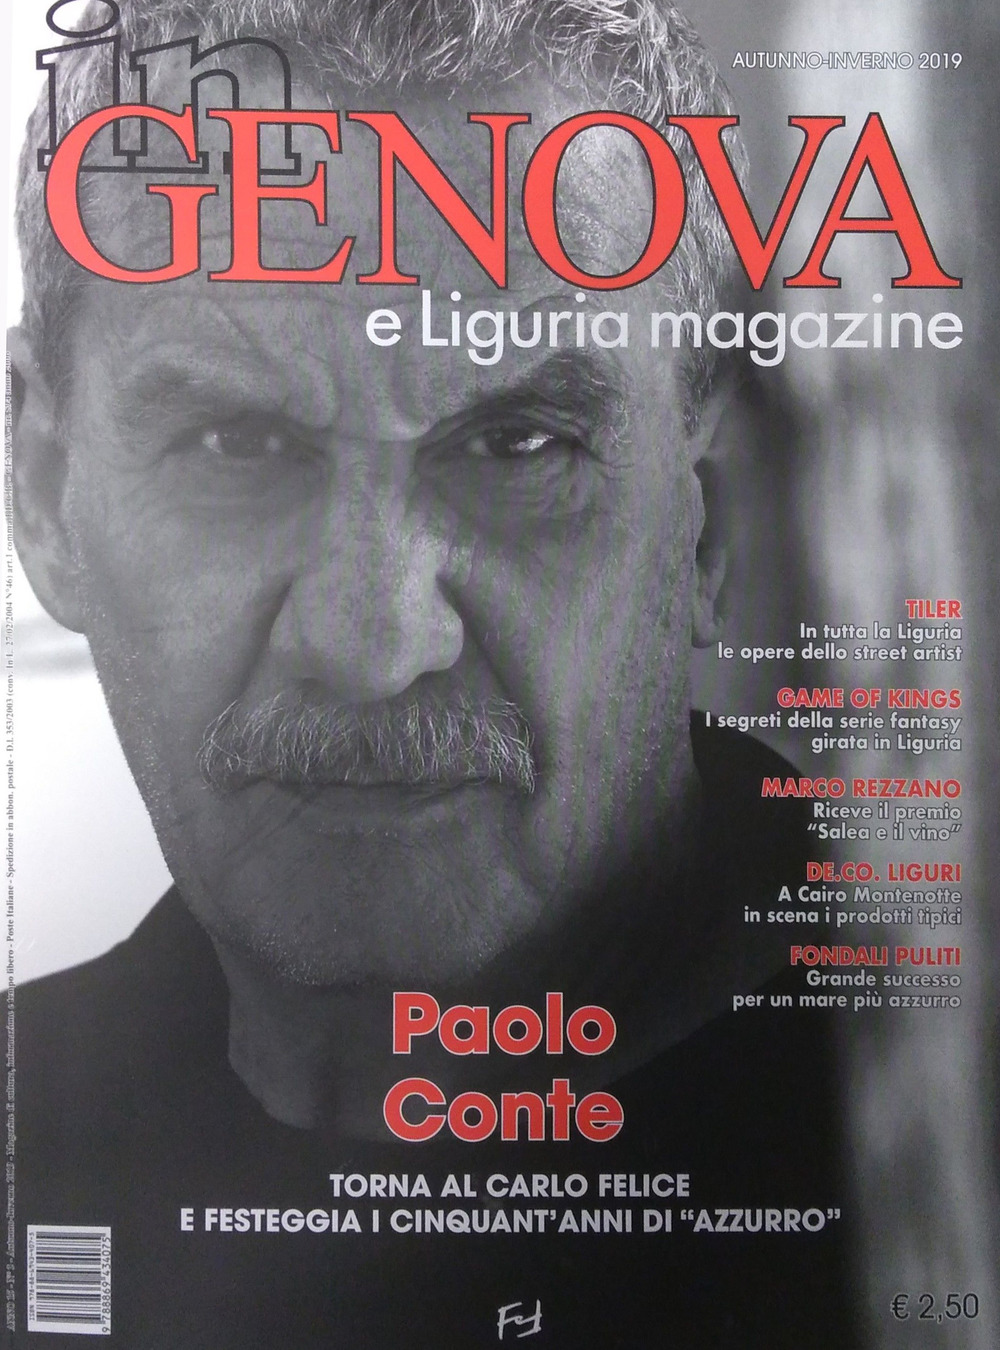 In Genova e Liguria Magazine (2019). Vol. 3: Autunno-Inverno